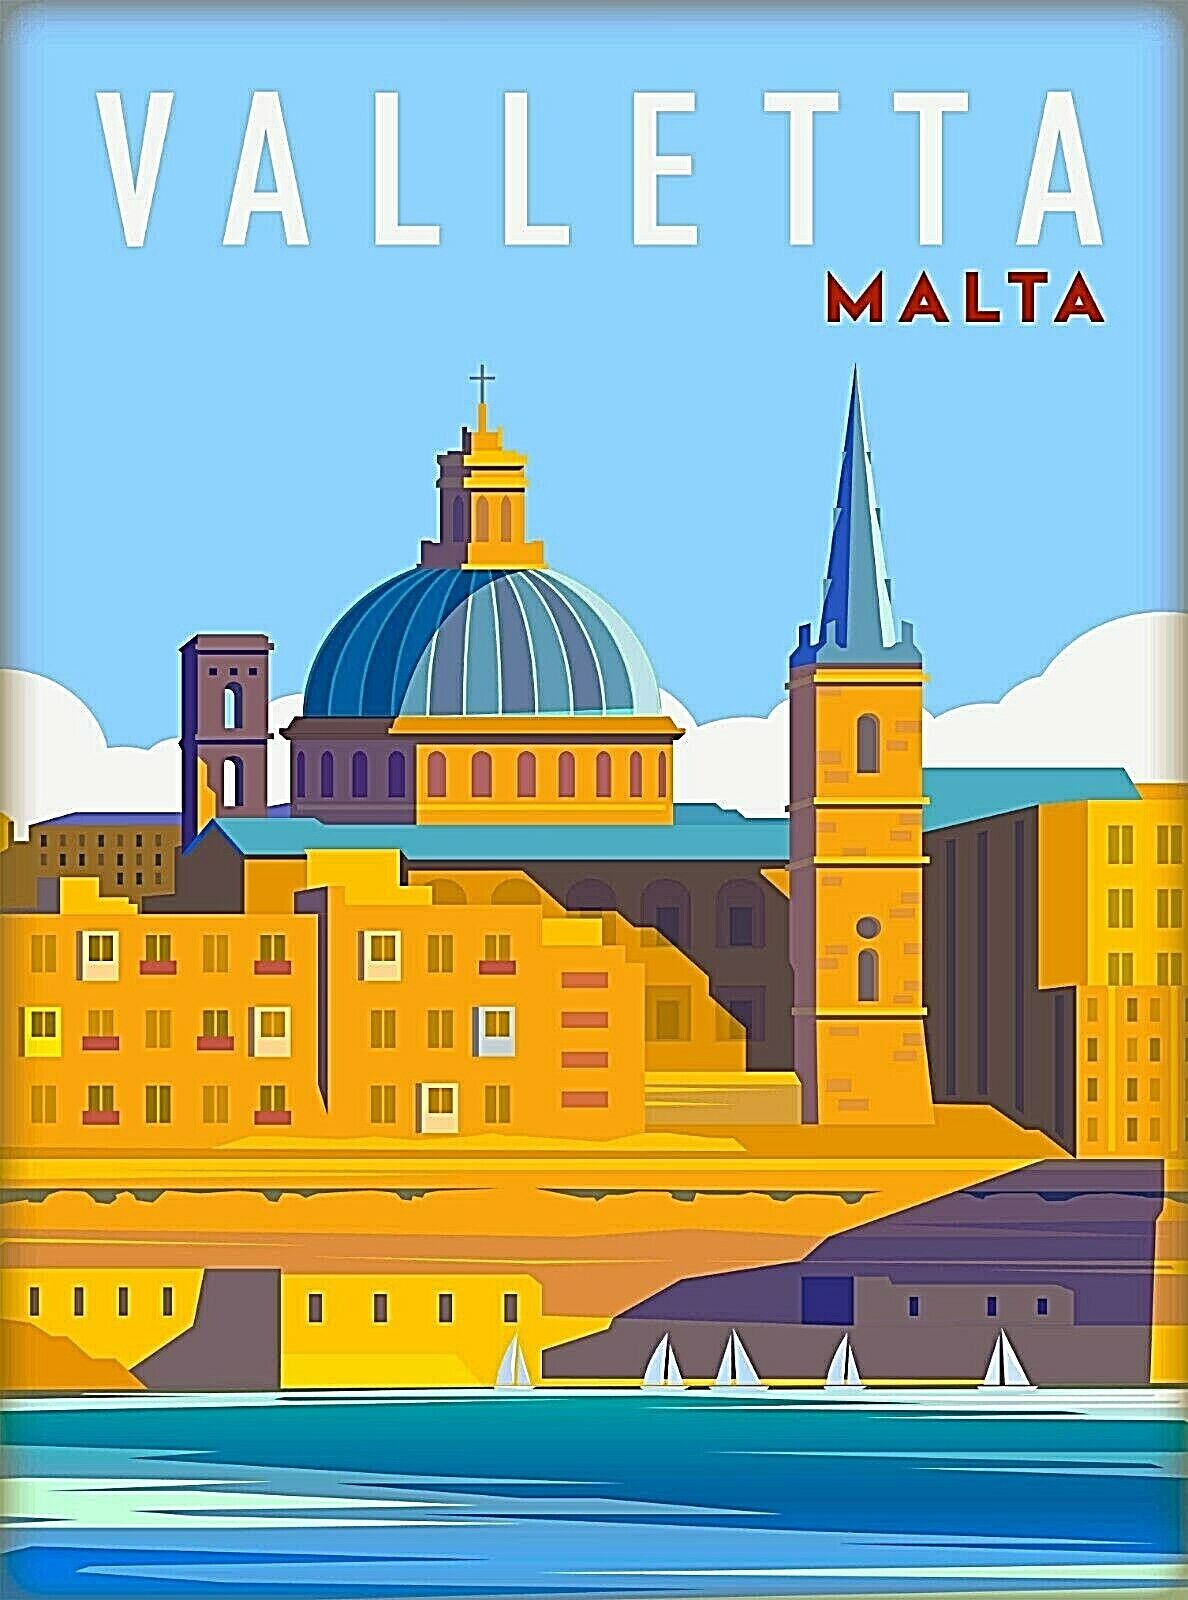 Valletta Malta Maltese Islands Retro Travel Wall Decor Art Deco Poster Print